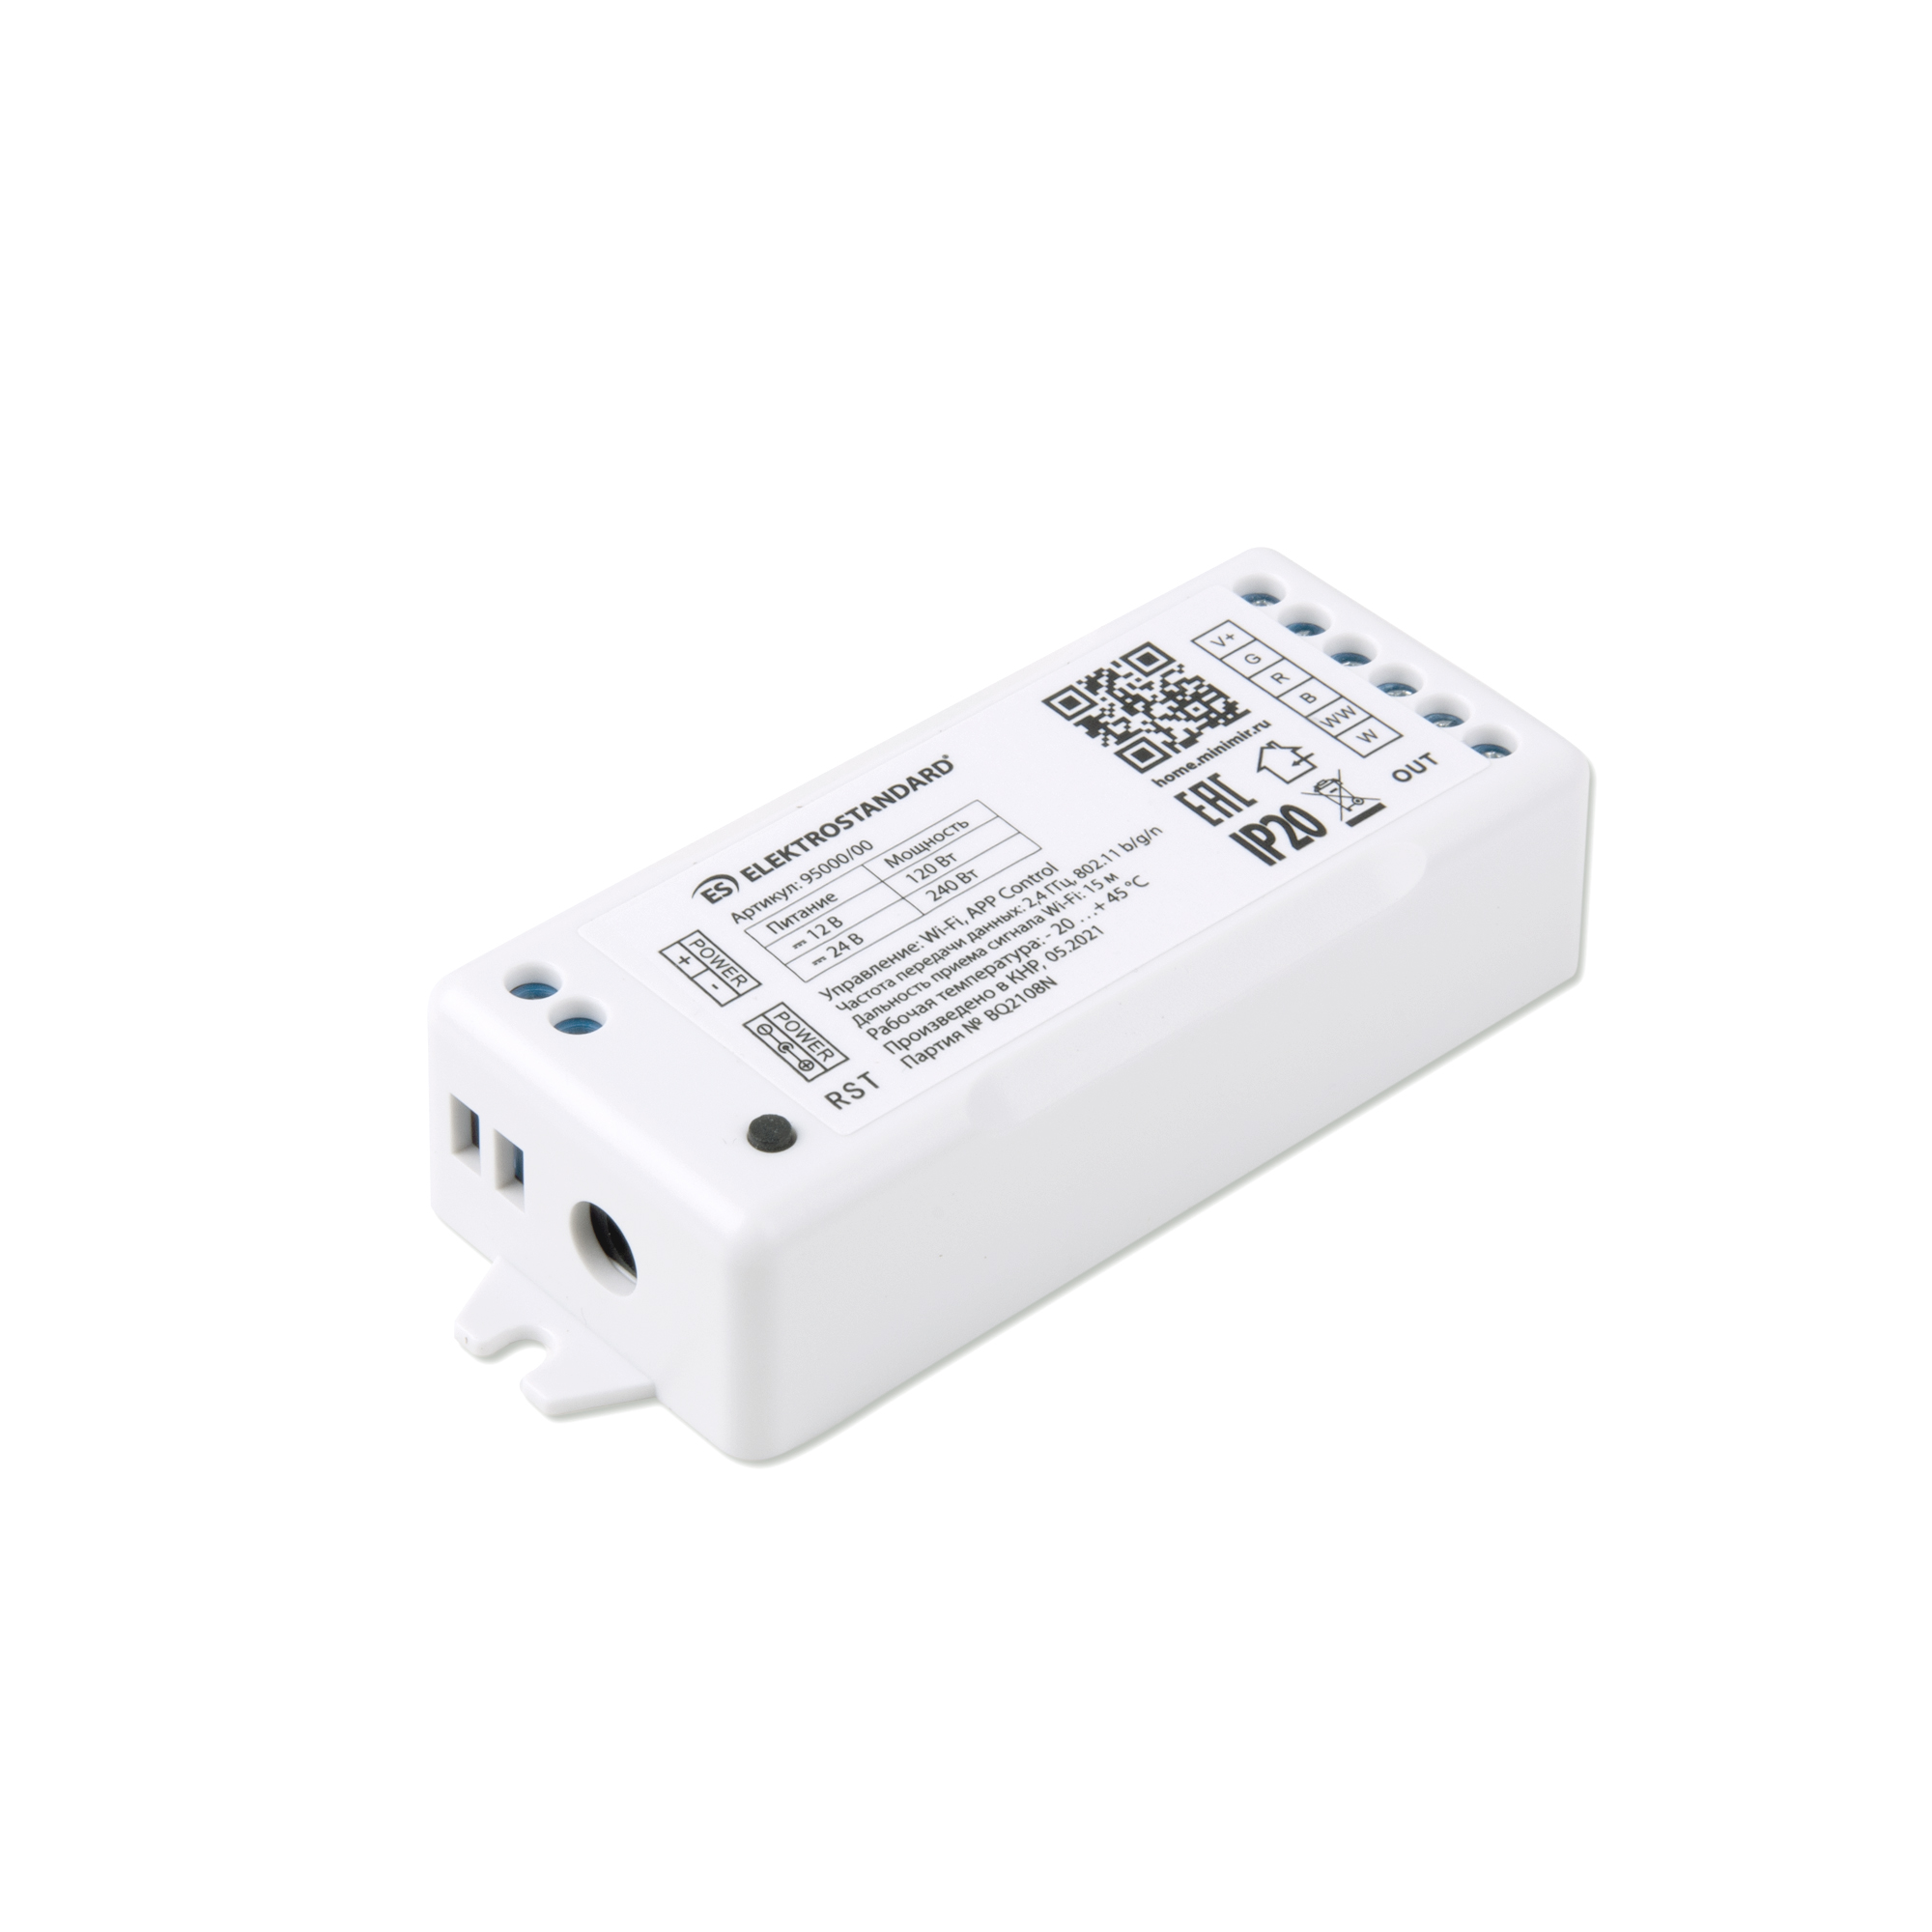 Умный контроллер для светодиодных лент RGBWW 12-24V Elektrostandard 95000/00 Minimir Home умный паровозик с кубиками